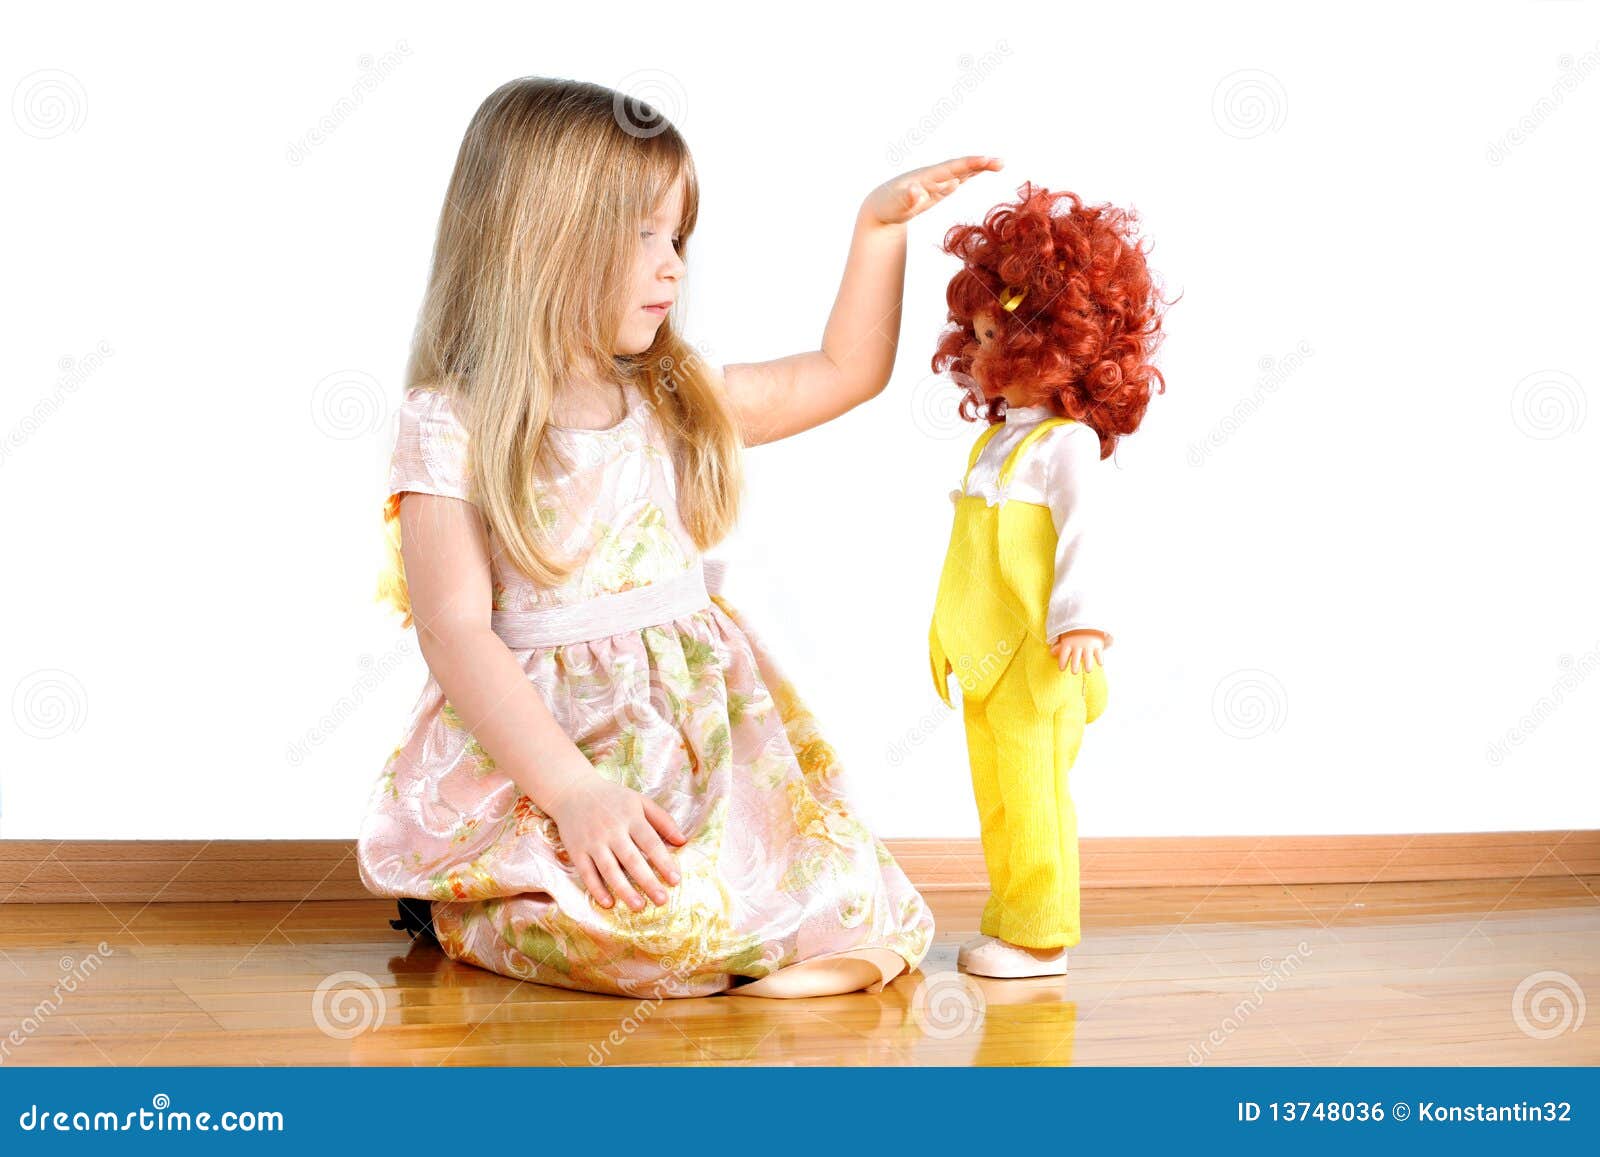 Девушка играет кукла. Куклы для девочек. Девочка играет в куклы. Маленькая девочка с куклой. Девочка с куклой на белом фоне.